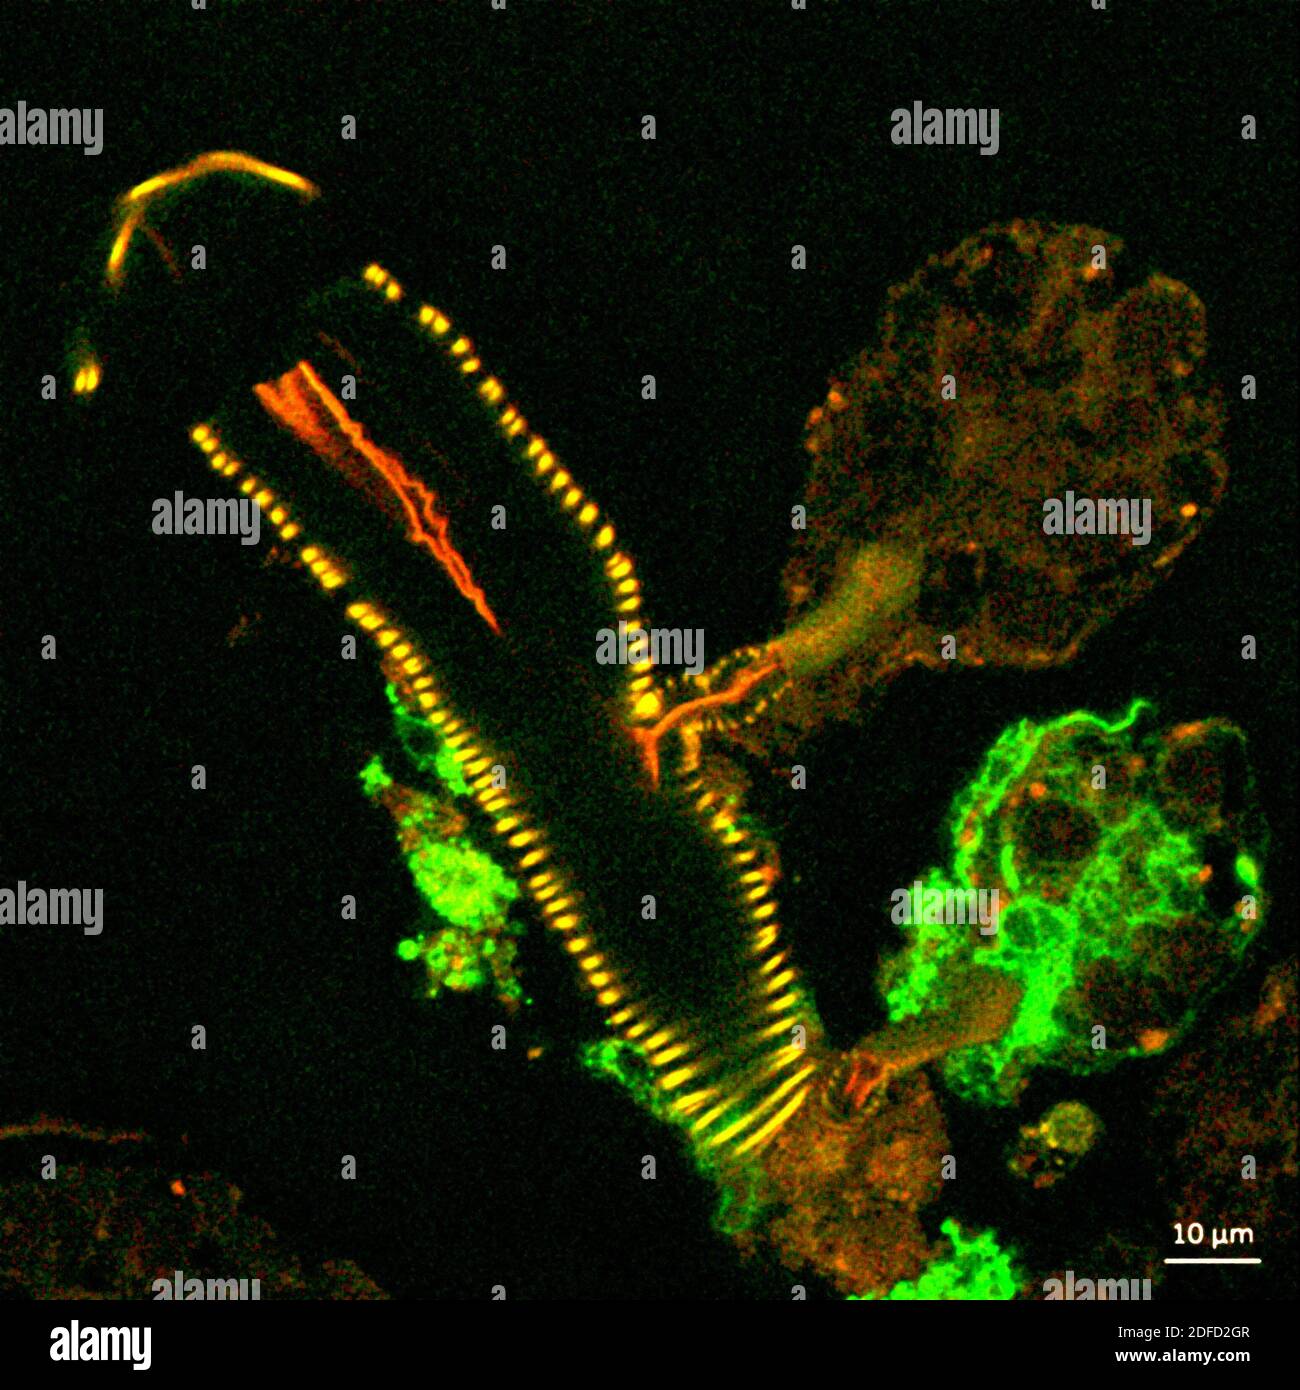 Cette image confocale au microscope montre une coupe transversale d'une glande salivaire de tique infectée par le virus Langat (vert). Deux structures arrondies à droite, Banque D'Images